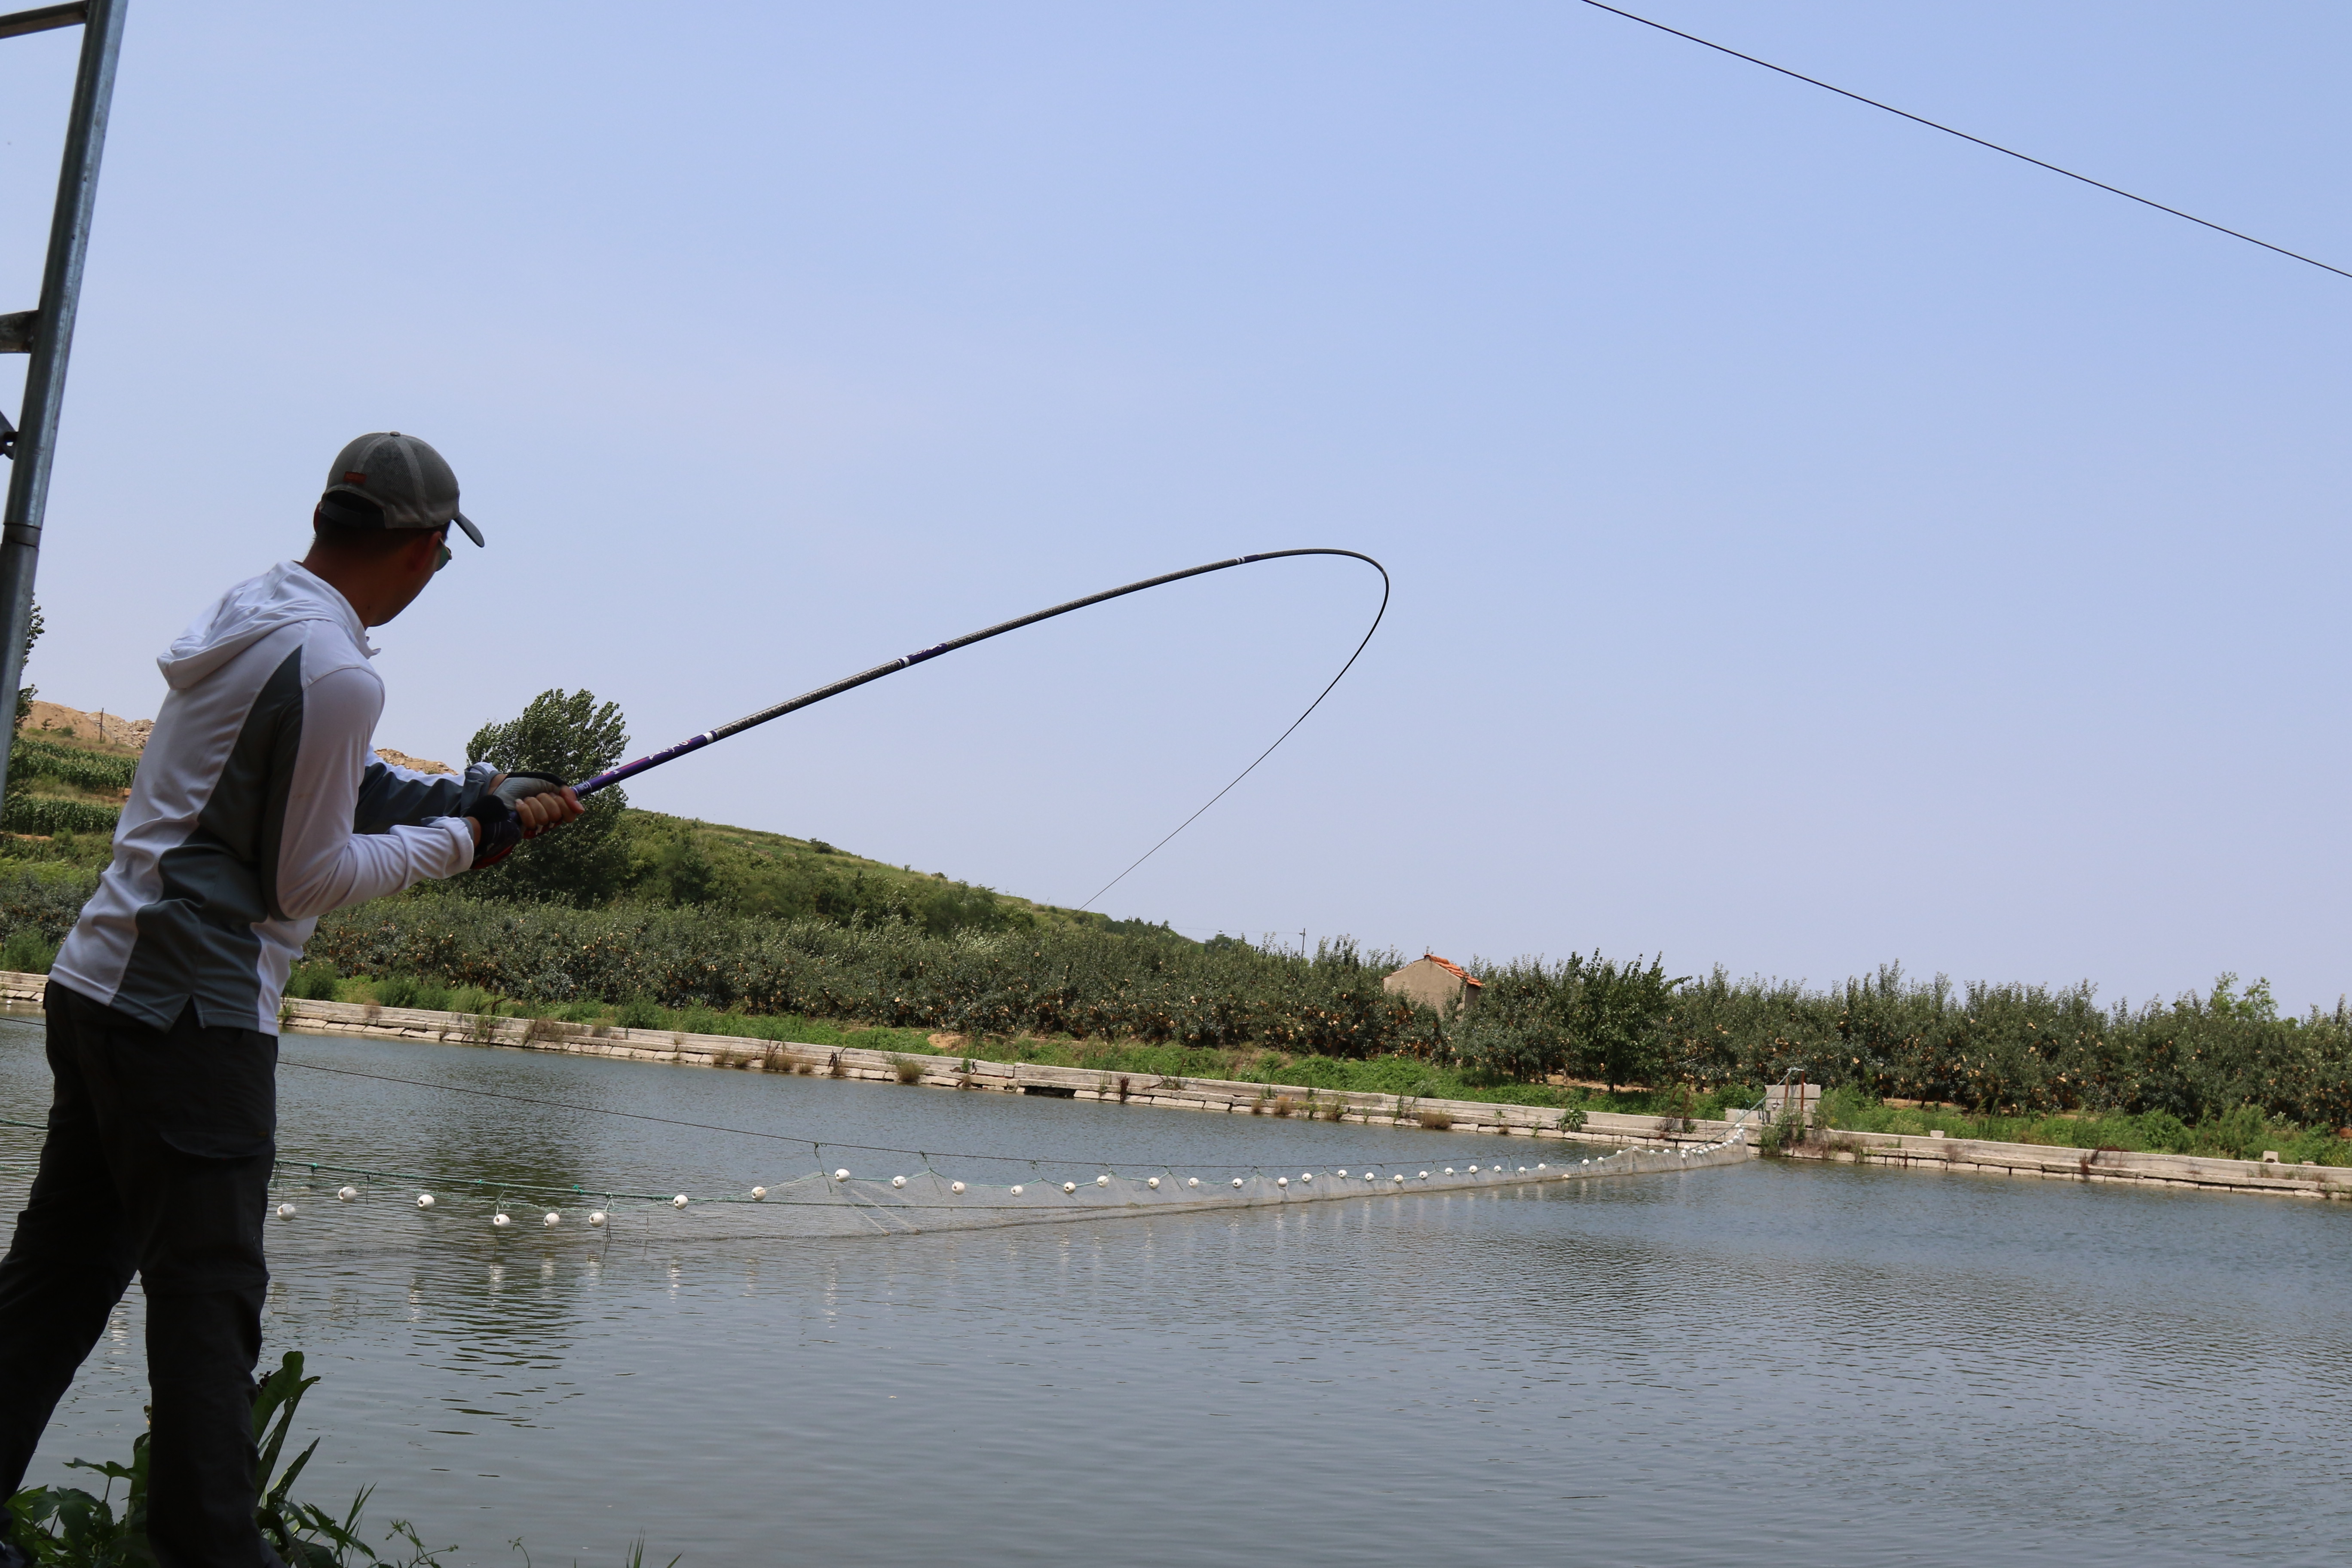 钓鱼时,竿尖入水多少才合适?